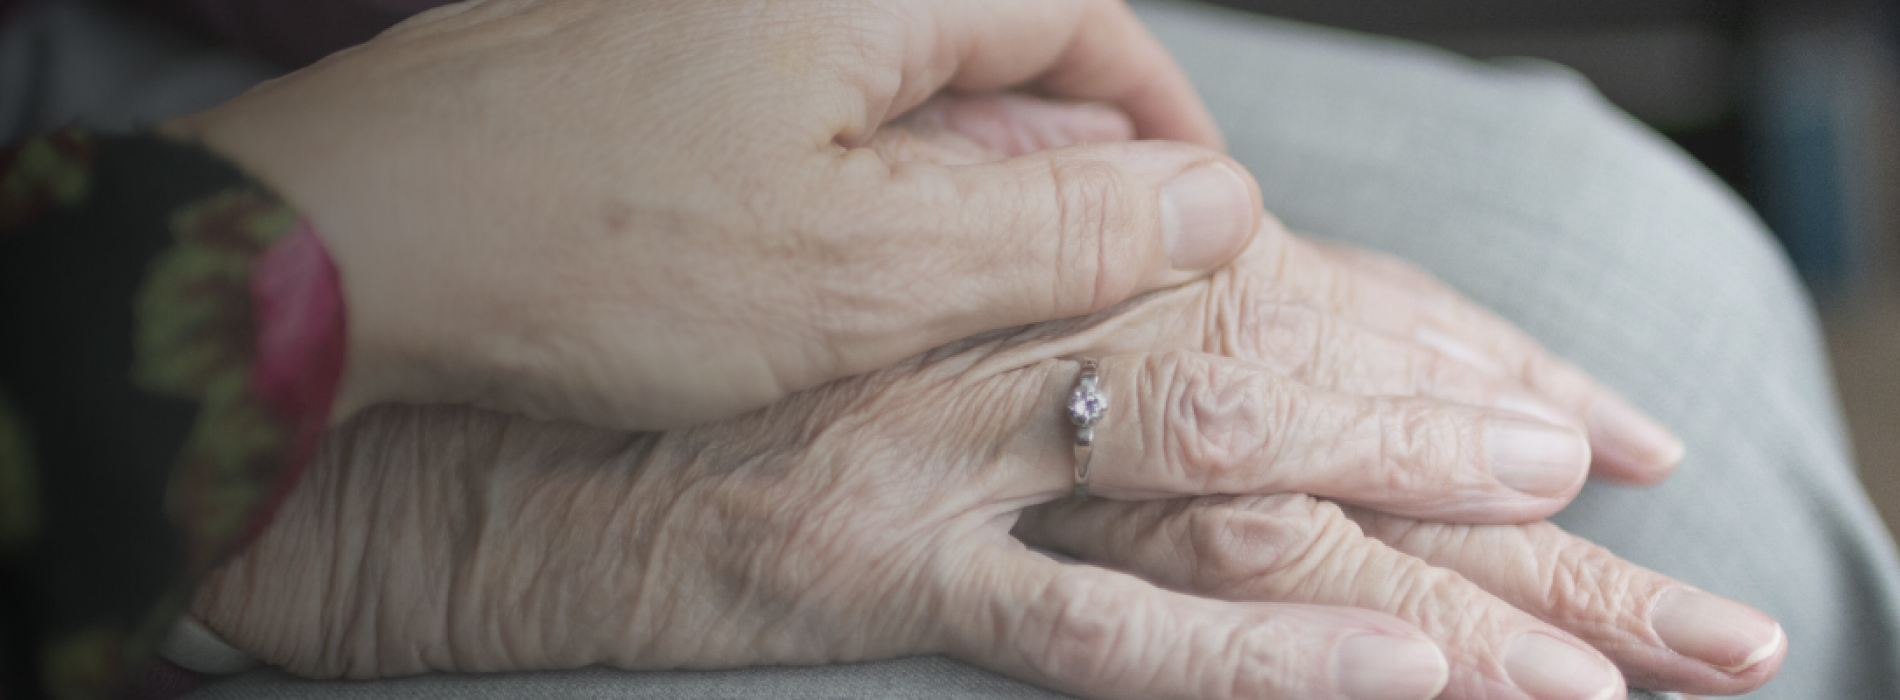 Envejecimiento saludable: estrategias de cuidado para adultos mayores